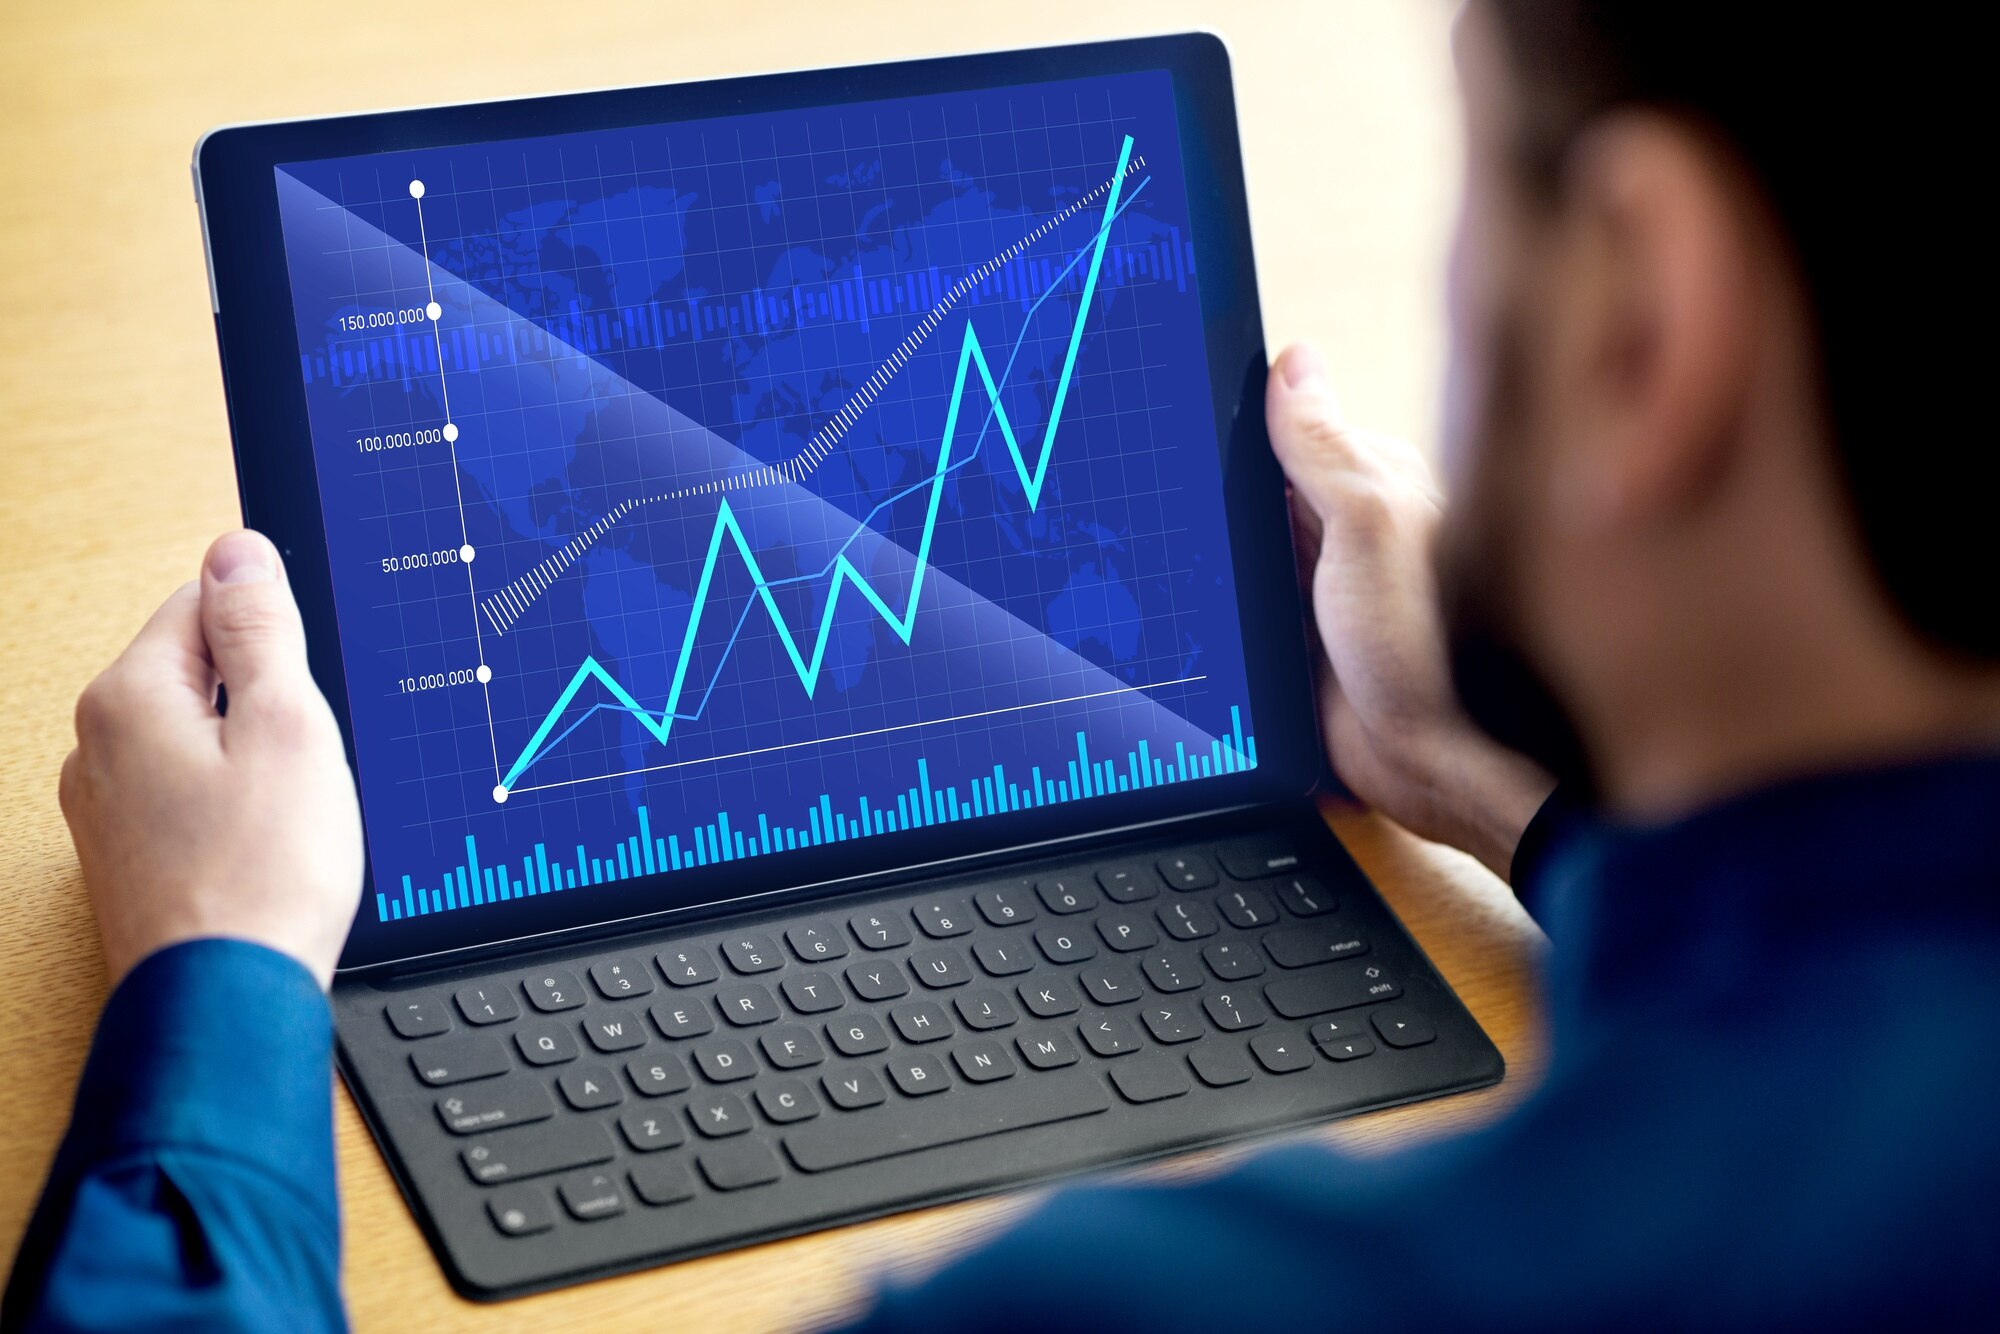 Research has revealed some worrying trends. Ноутбук руки. Индикаторы экономического роста. Для выявления тренда используют. Анализировать и прогнозировать одно и тоже?.